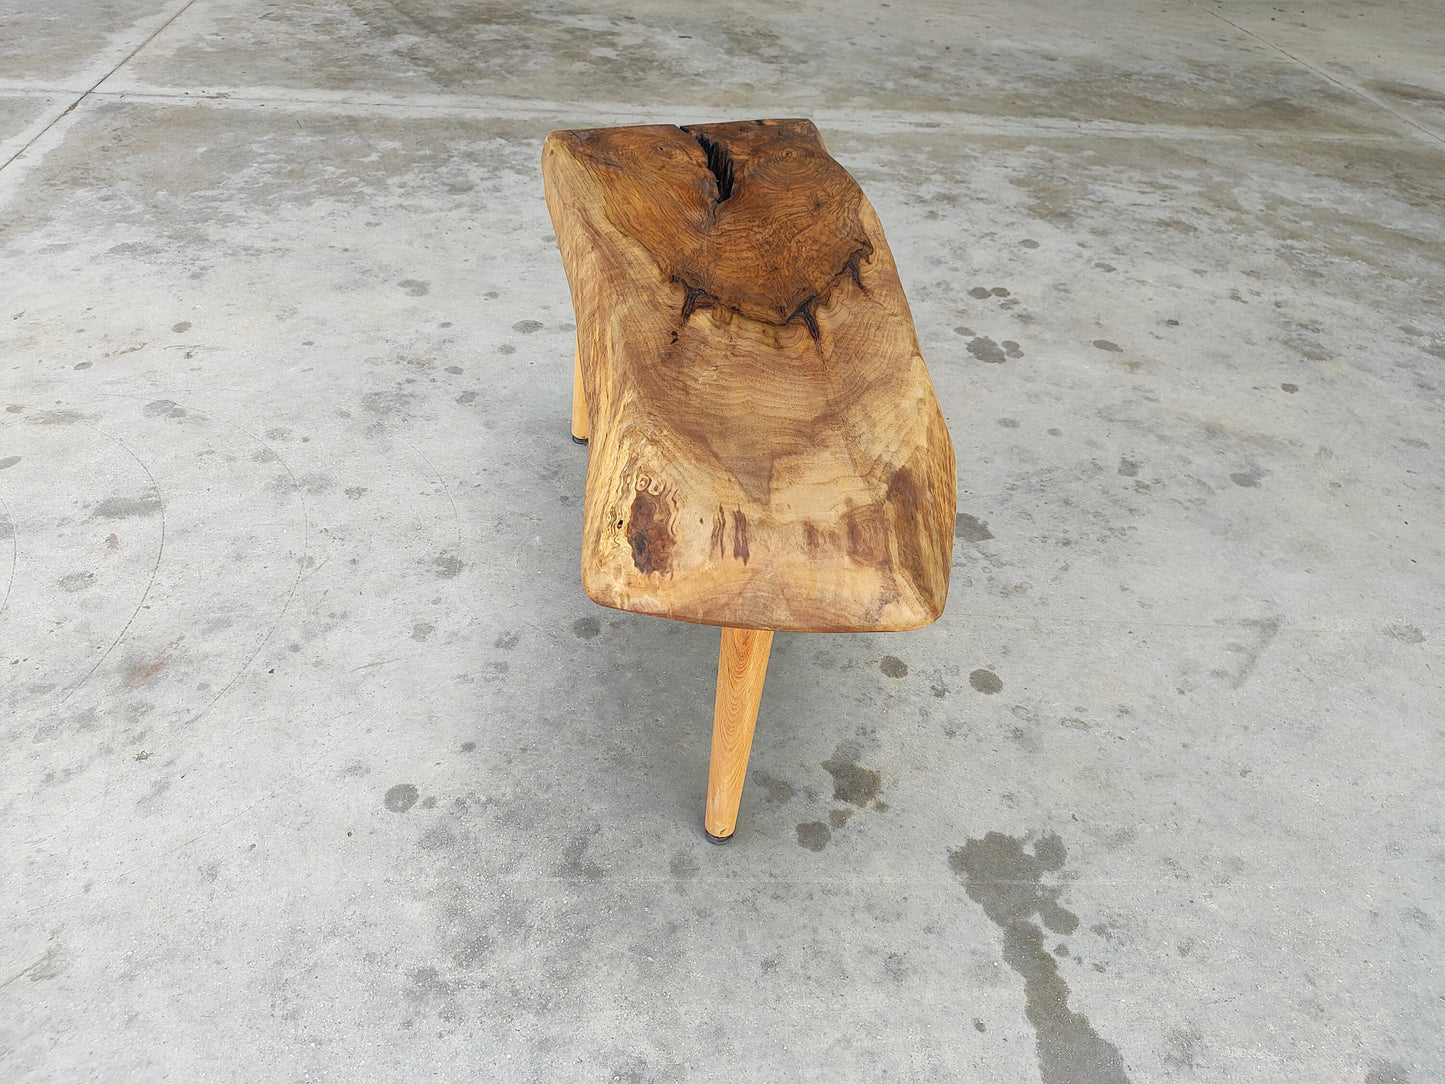 Rustieke handgemaakte houten salontafel - Unieke walnoot (WG-1094)